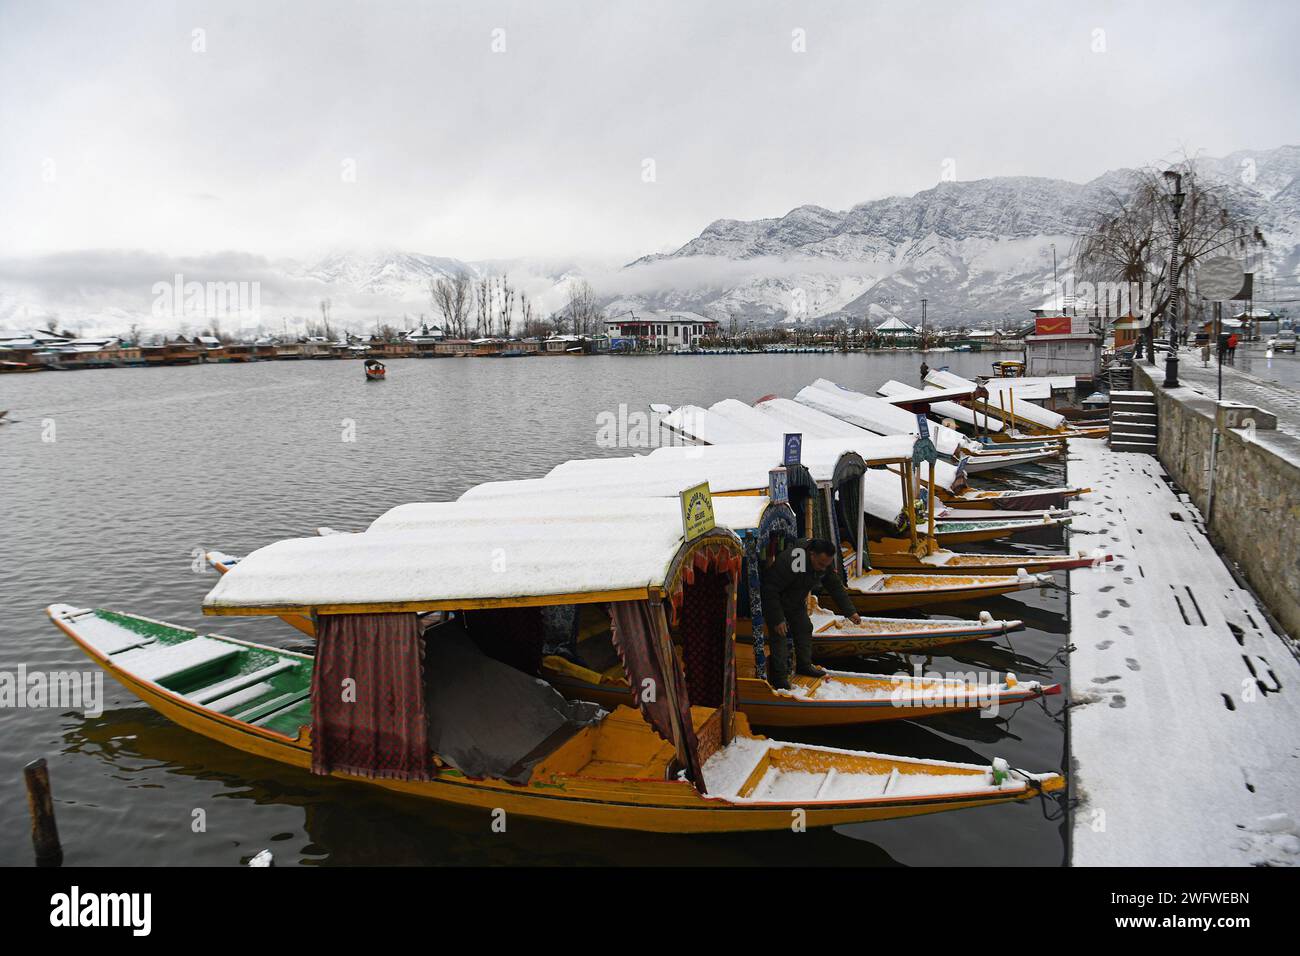 Le nevicate fresche nei tratti più alti della valle del Kashmir hanno infranto uno dei più lunghi periodi di asciutto di circa due mesi di questa stagione. Una fresca nevicata ha attirato la gente del posto e i turisti. L'economia dello stato è fortemente dipendente dall'industria turistica e la nevicata dopo una lunga attesa attira i turisti nella scintillante valle d'argento. Kashmir, India. Foto Stock